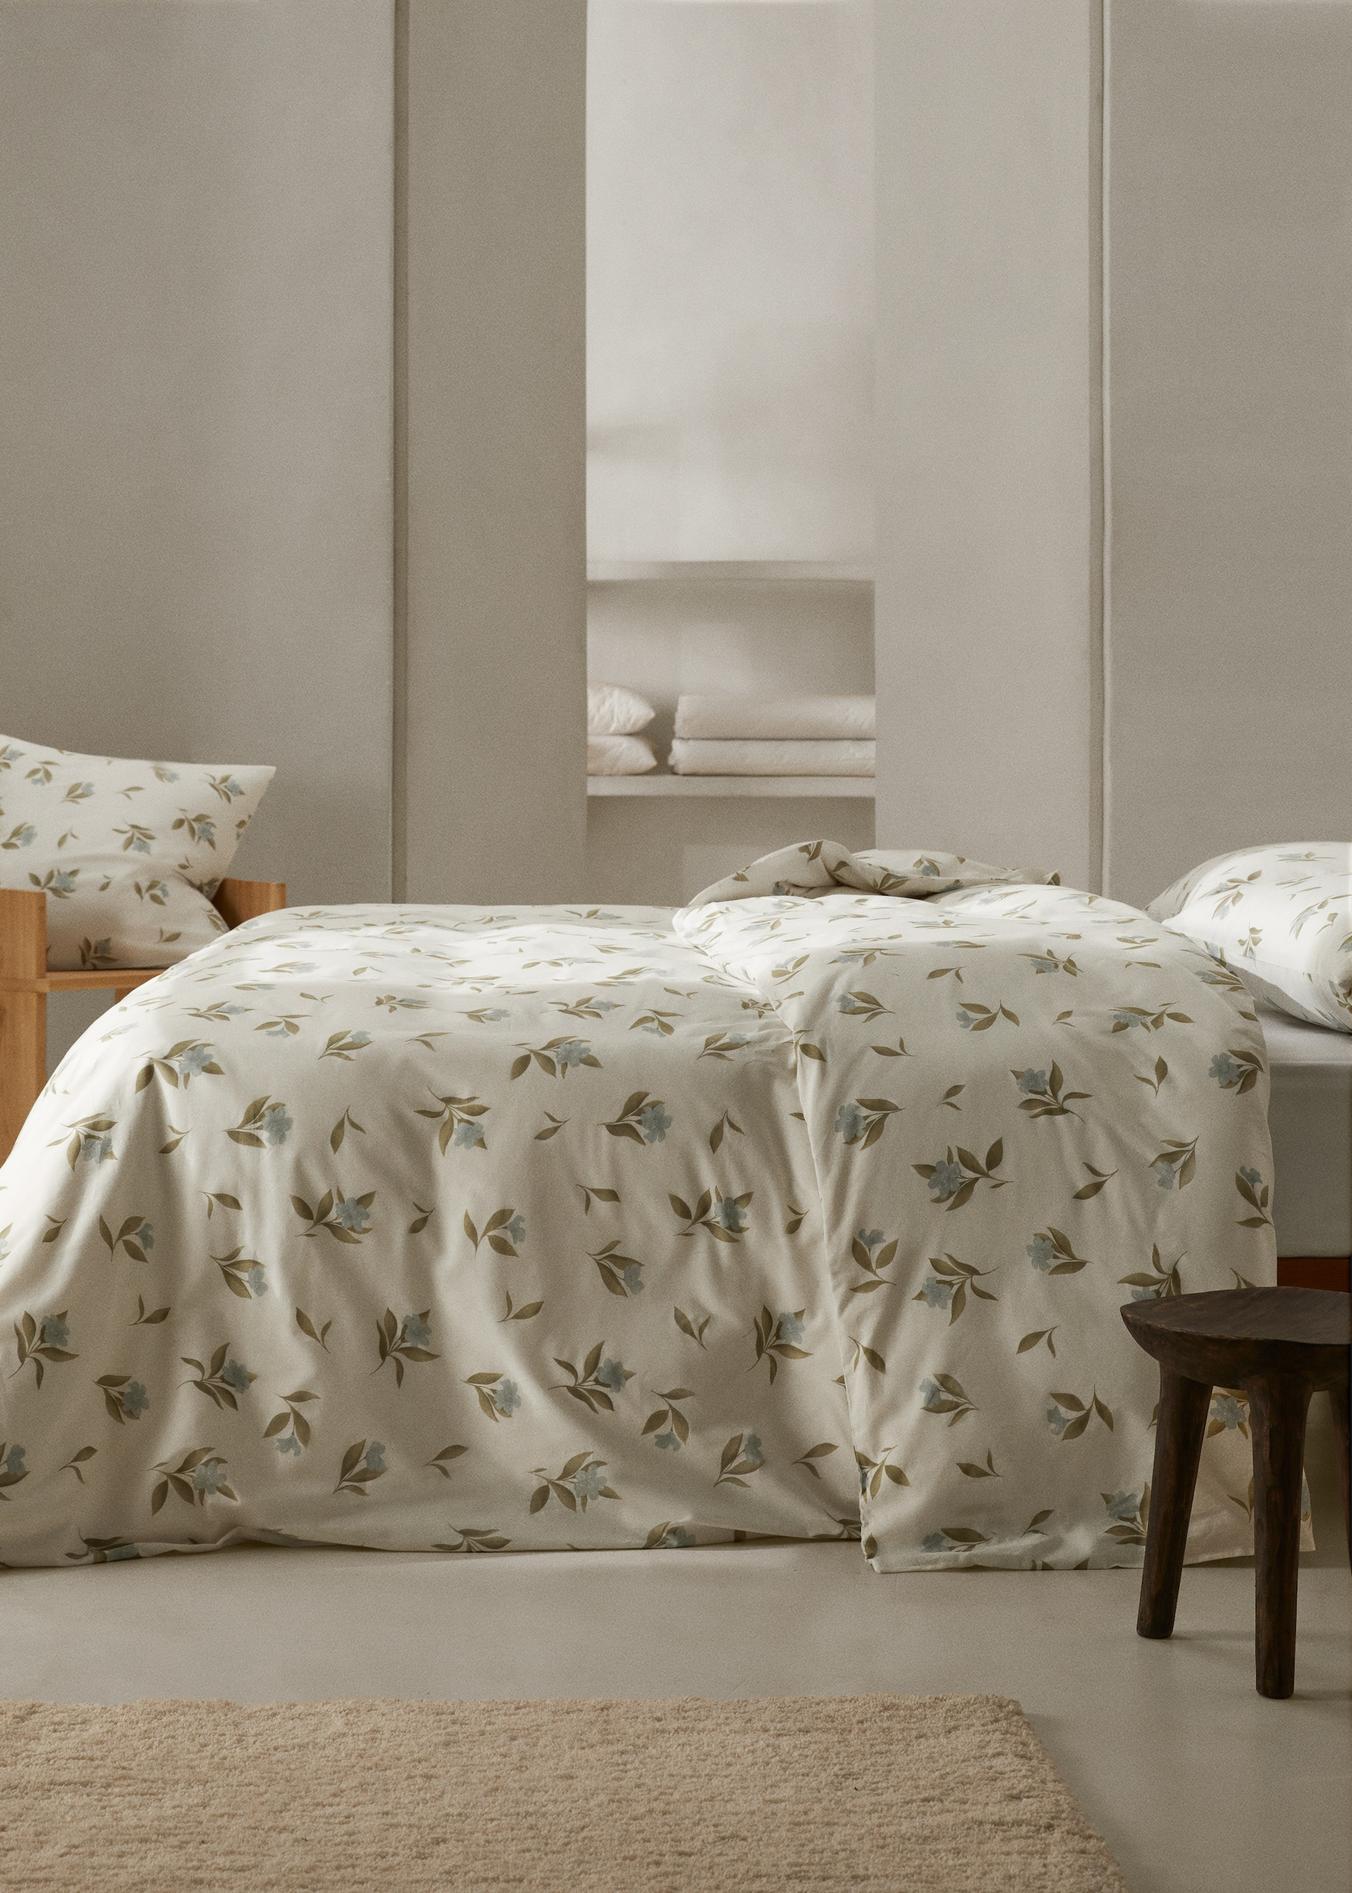 Bettbezug mit Blumenmuster für 150 cm Bett für 45,99€ in Mango